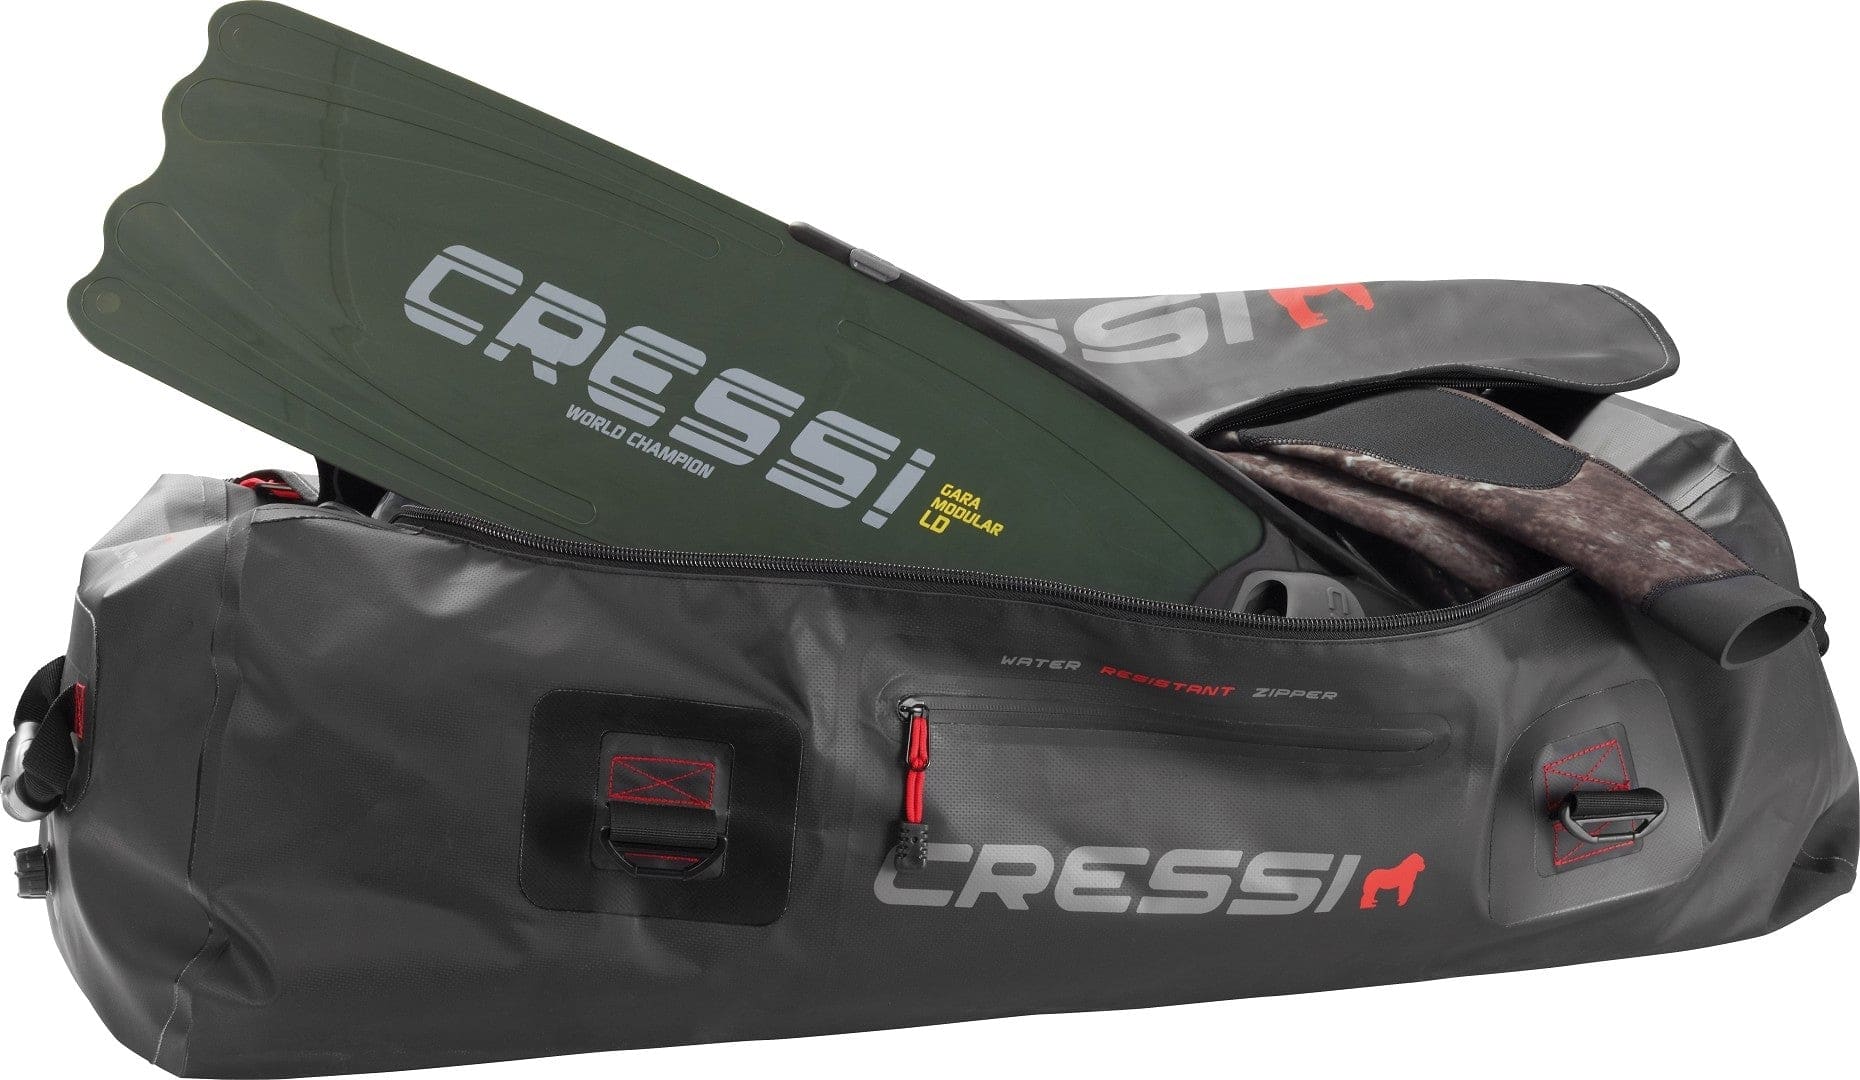 Cressi Gorilla Pro XL - Dive & Fish dive shop